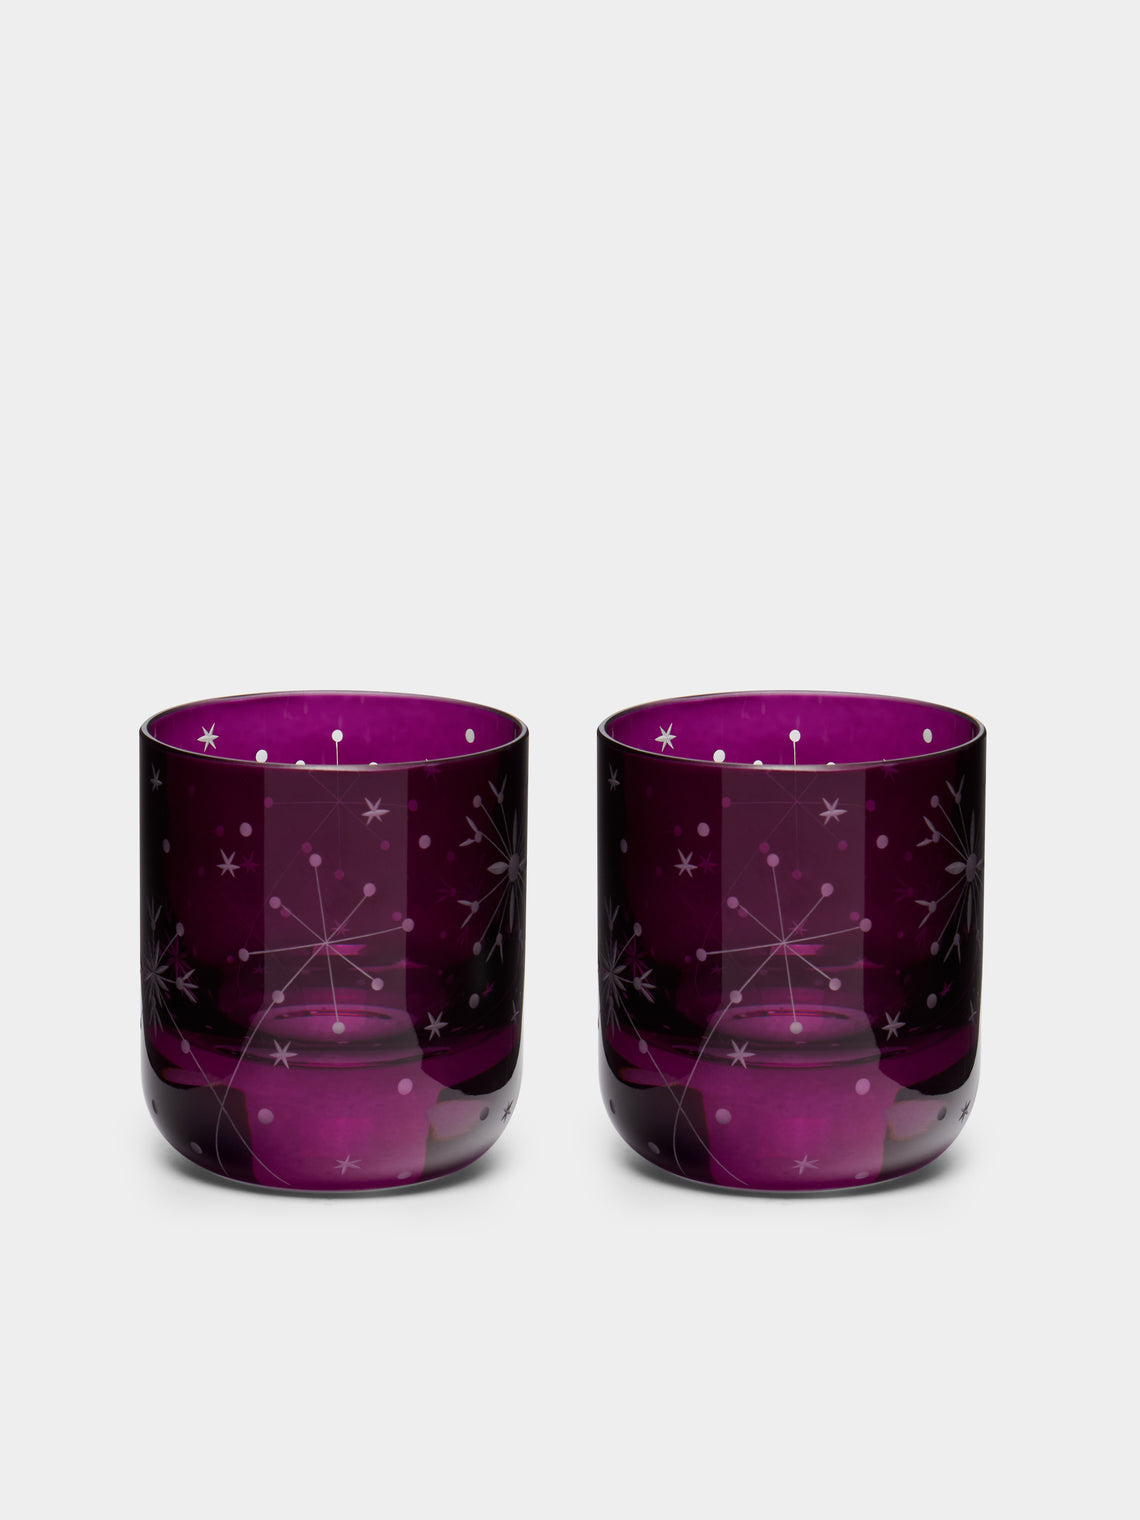 Artel - Fireworks Hand-Engraved Crystal Votive Candle Holders (Set of 2) -  - ABASK